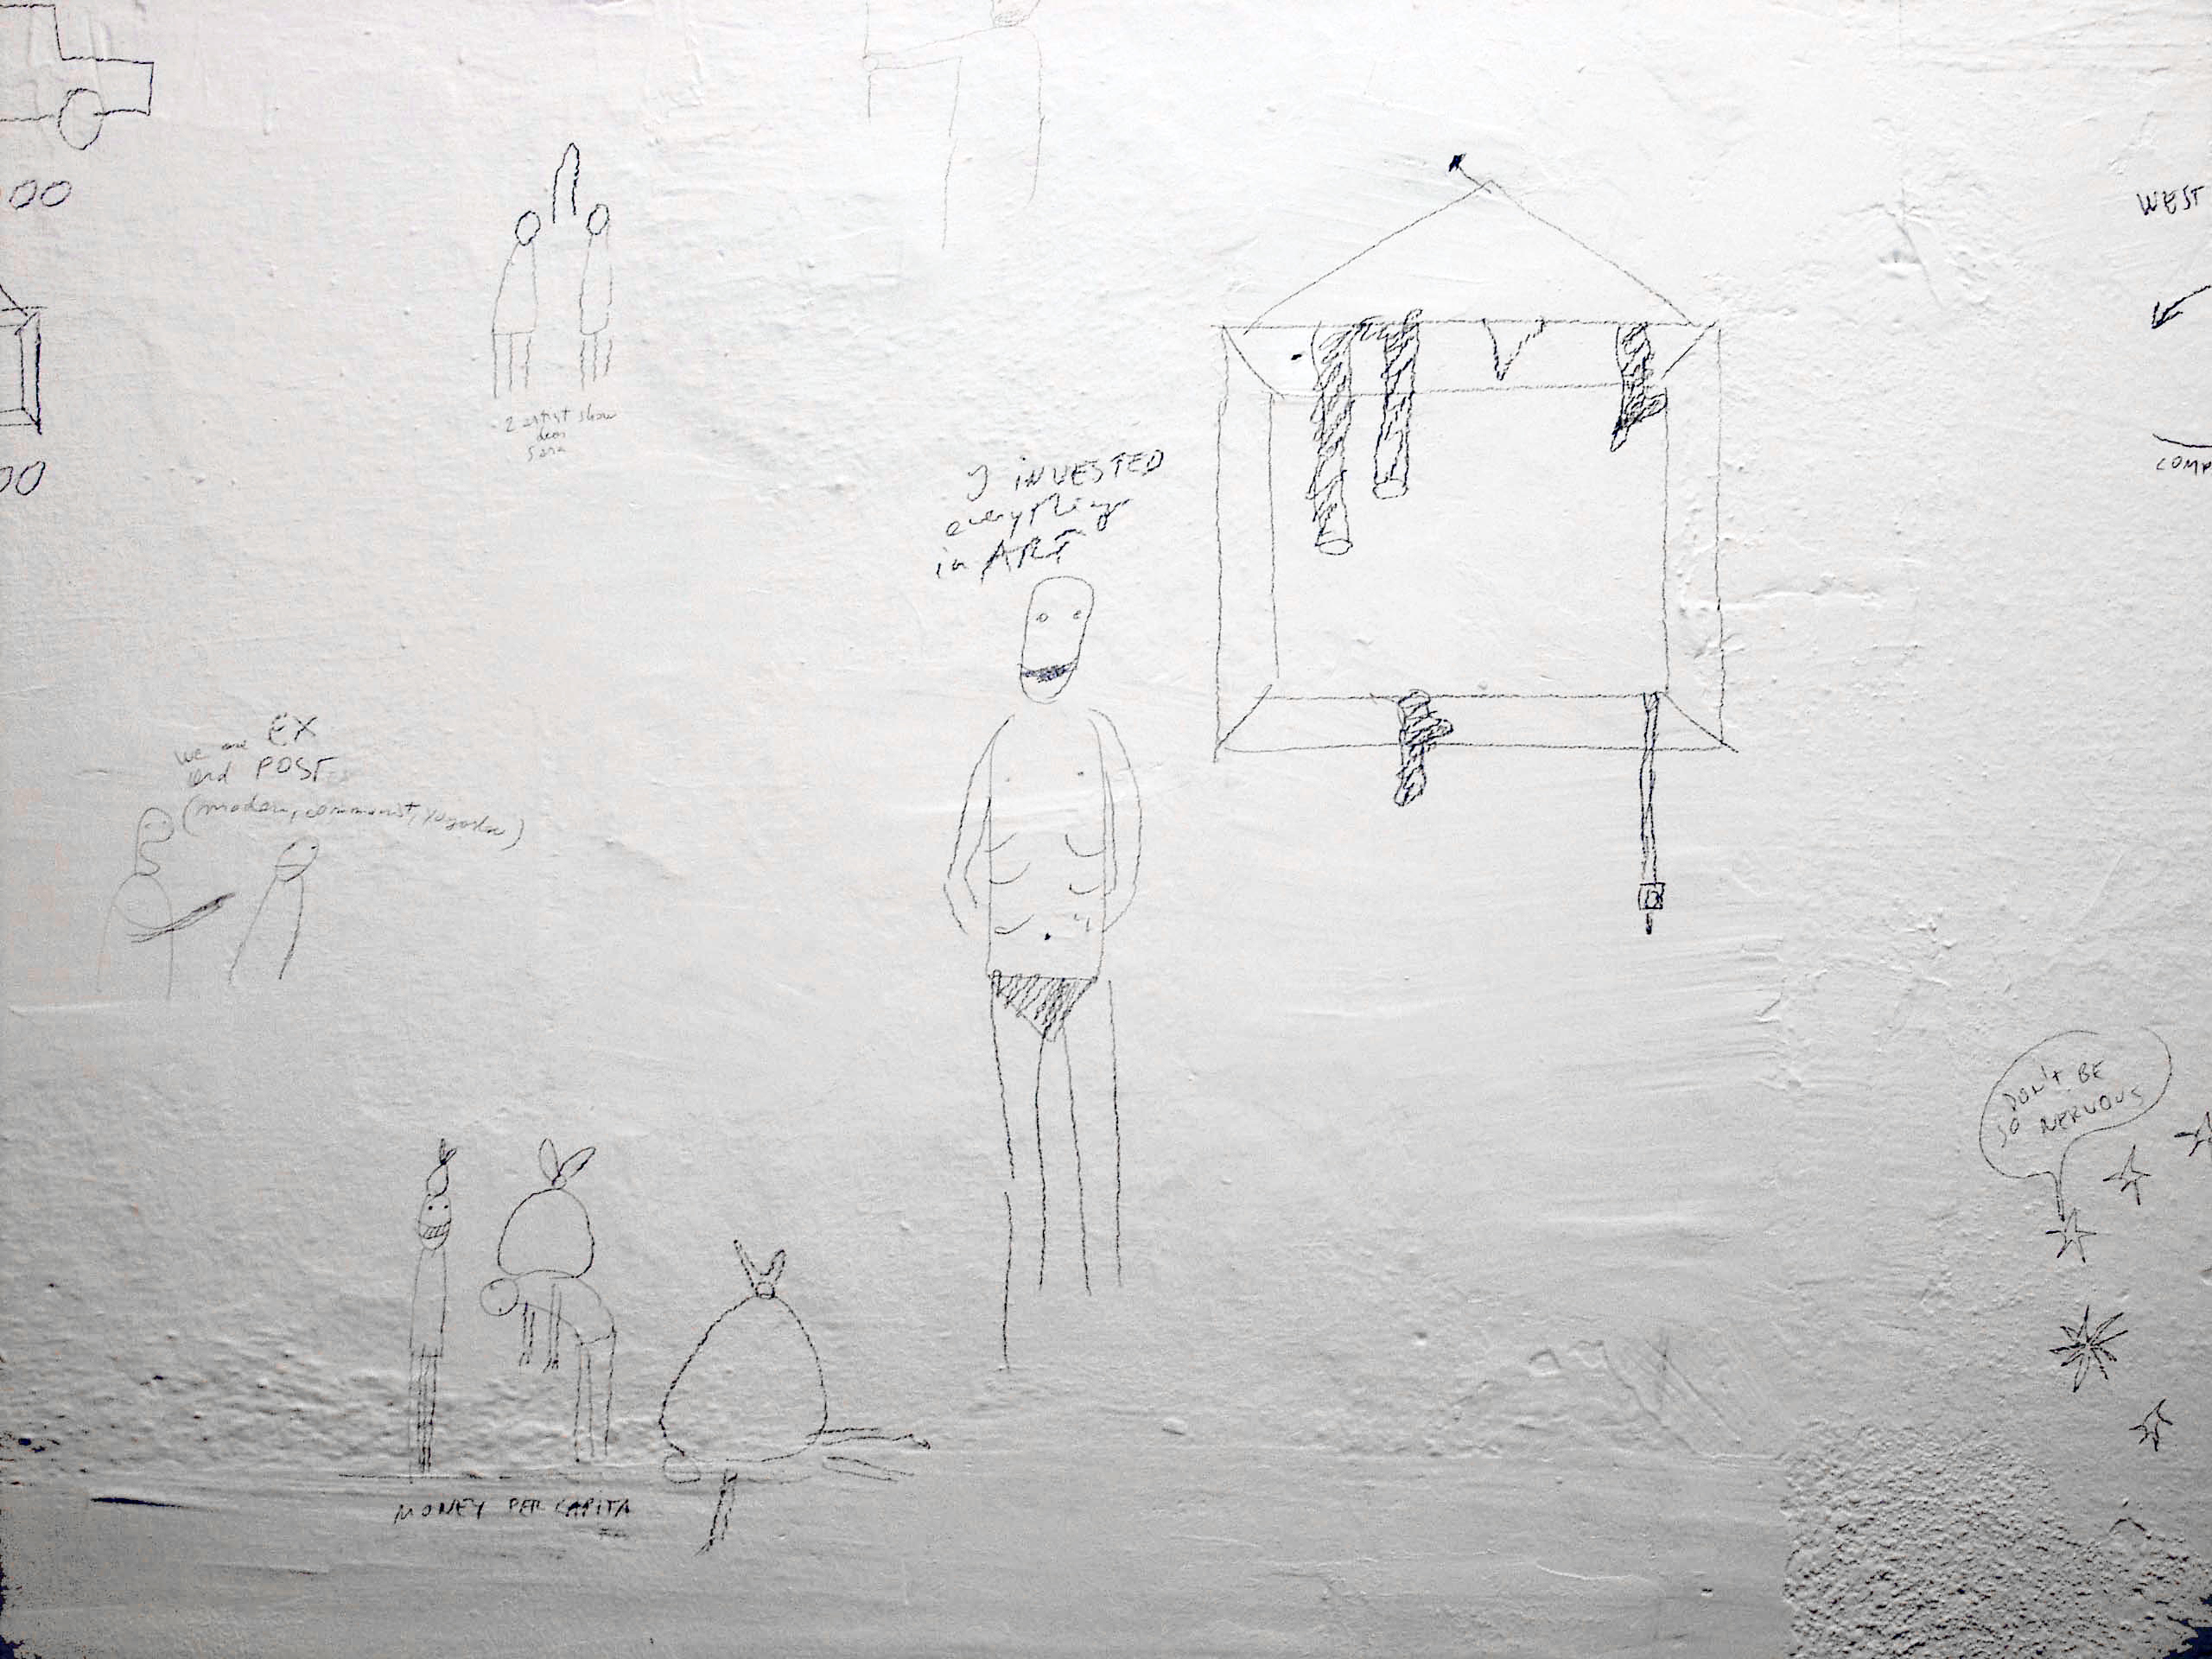 Dan Perjovschi | Goran Petercol: Drawing, Drawing, exhibition view, Galerija Gregor Podnar, Kranj, 2004